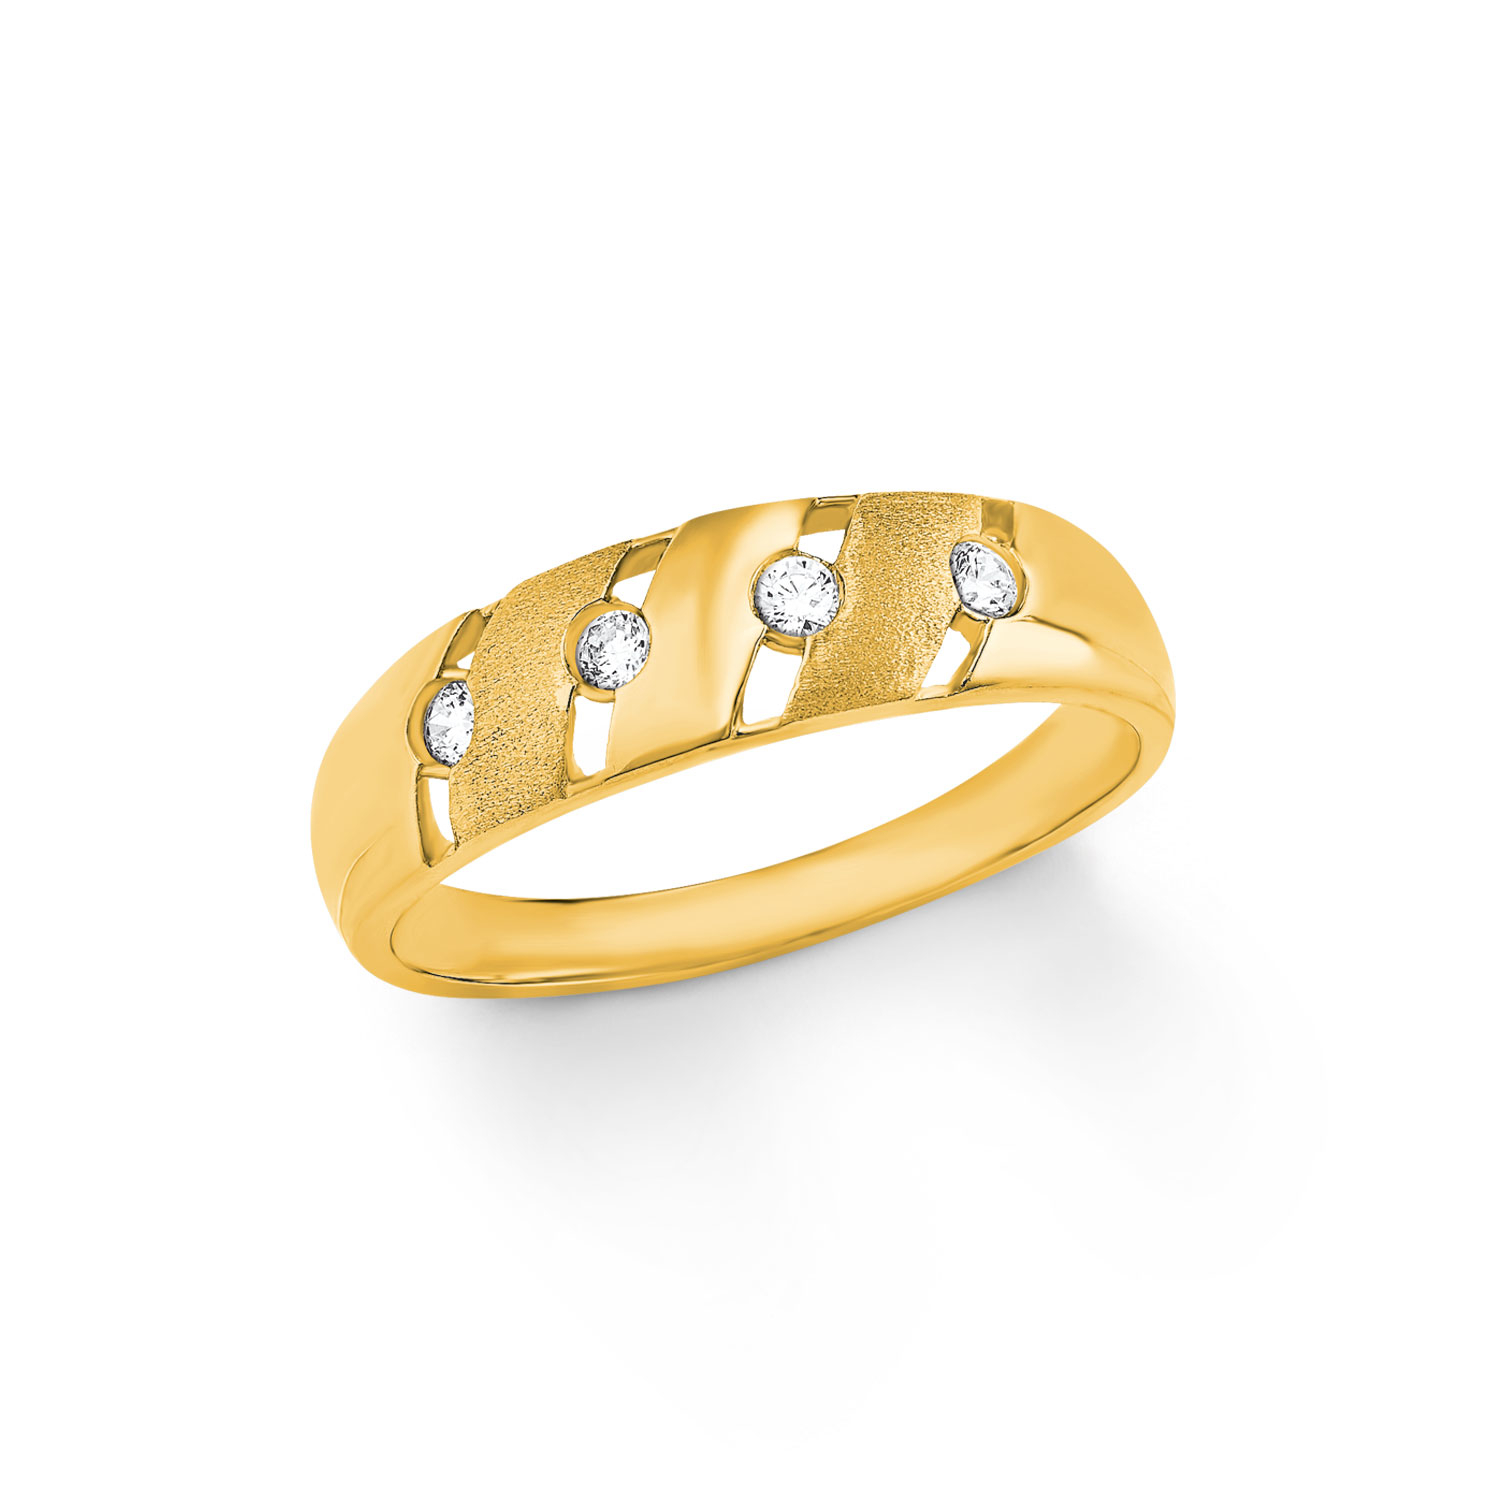 NEU Damen Ring 333 echt Gold Weißgold klassisch 8 Karat 1 Zirkoniastein Gr 50-60